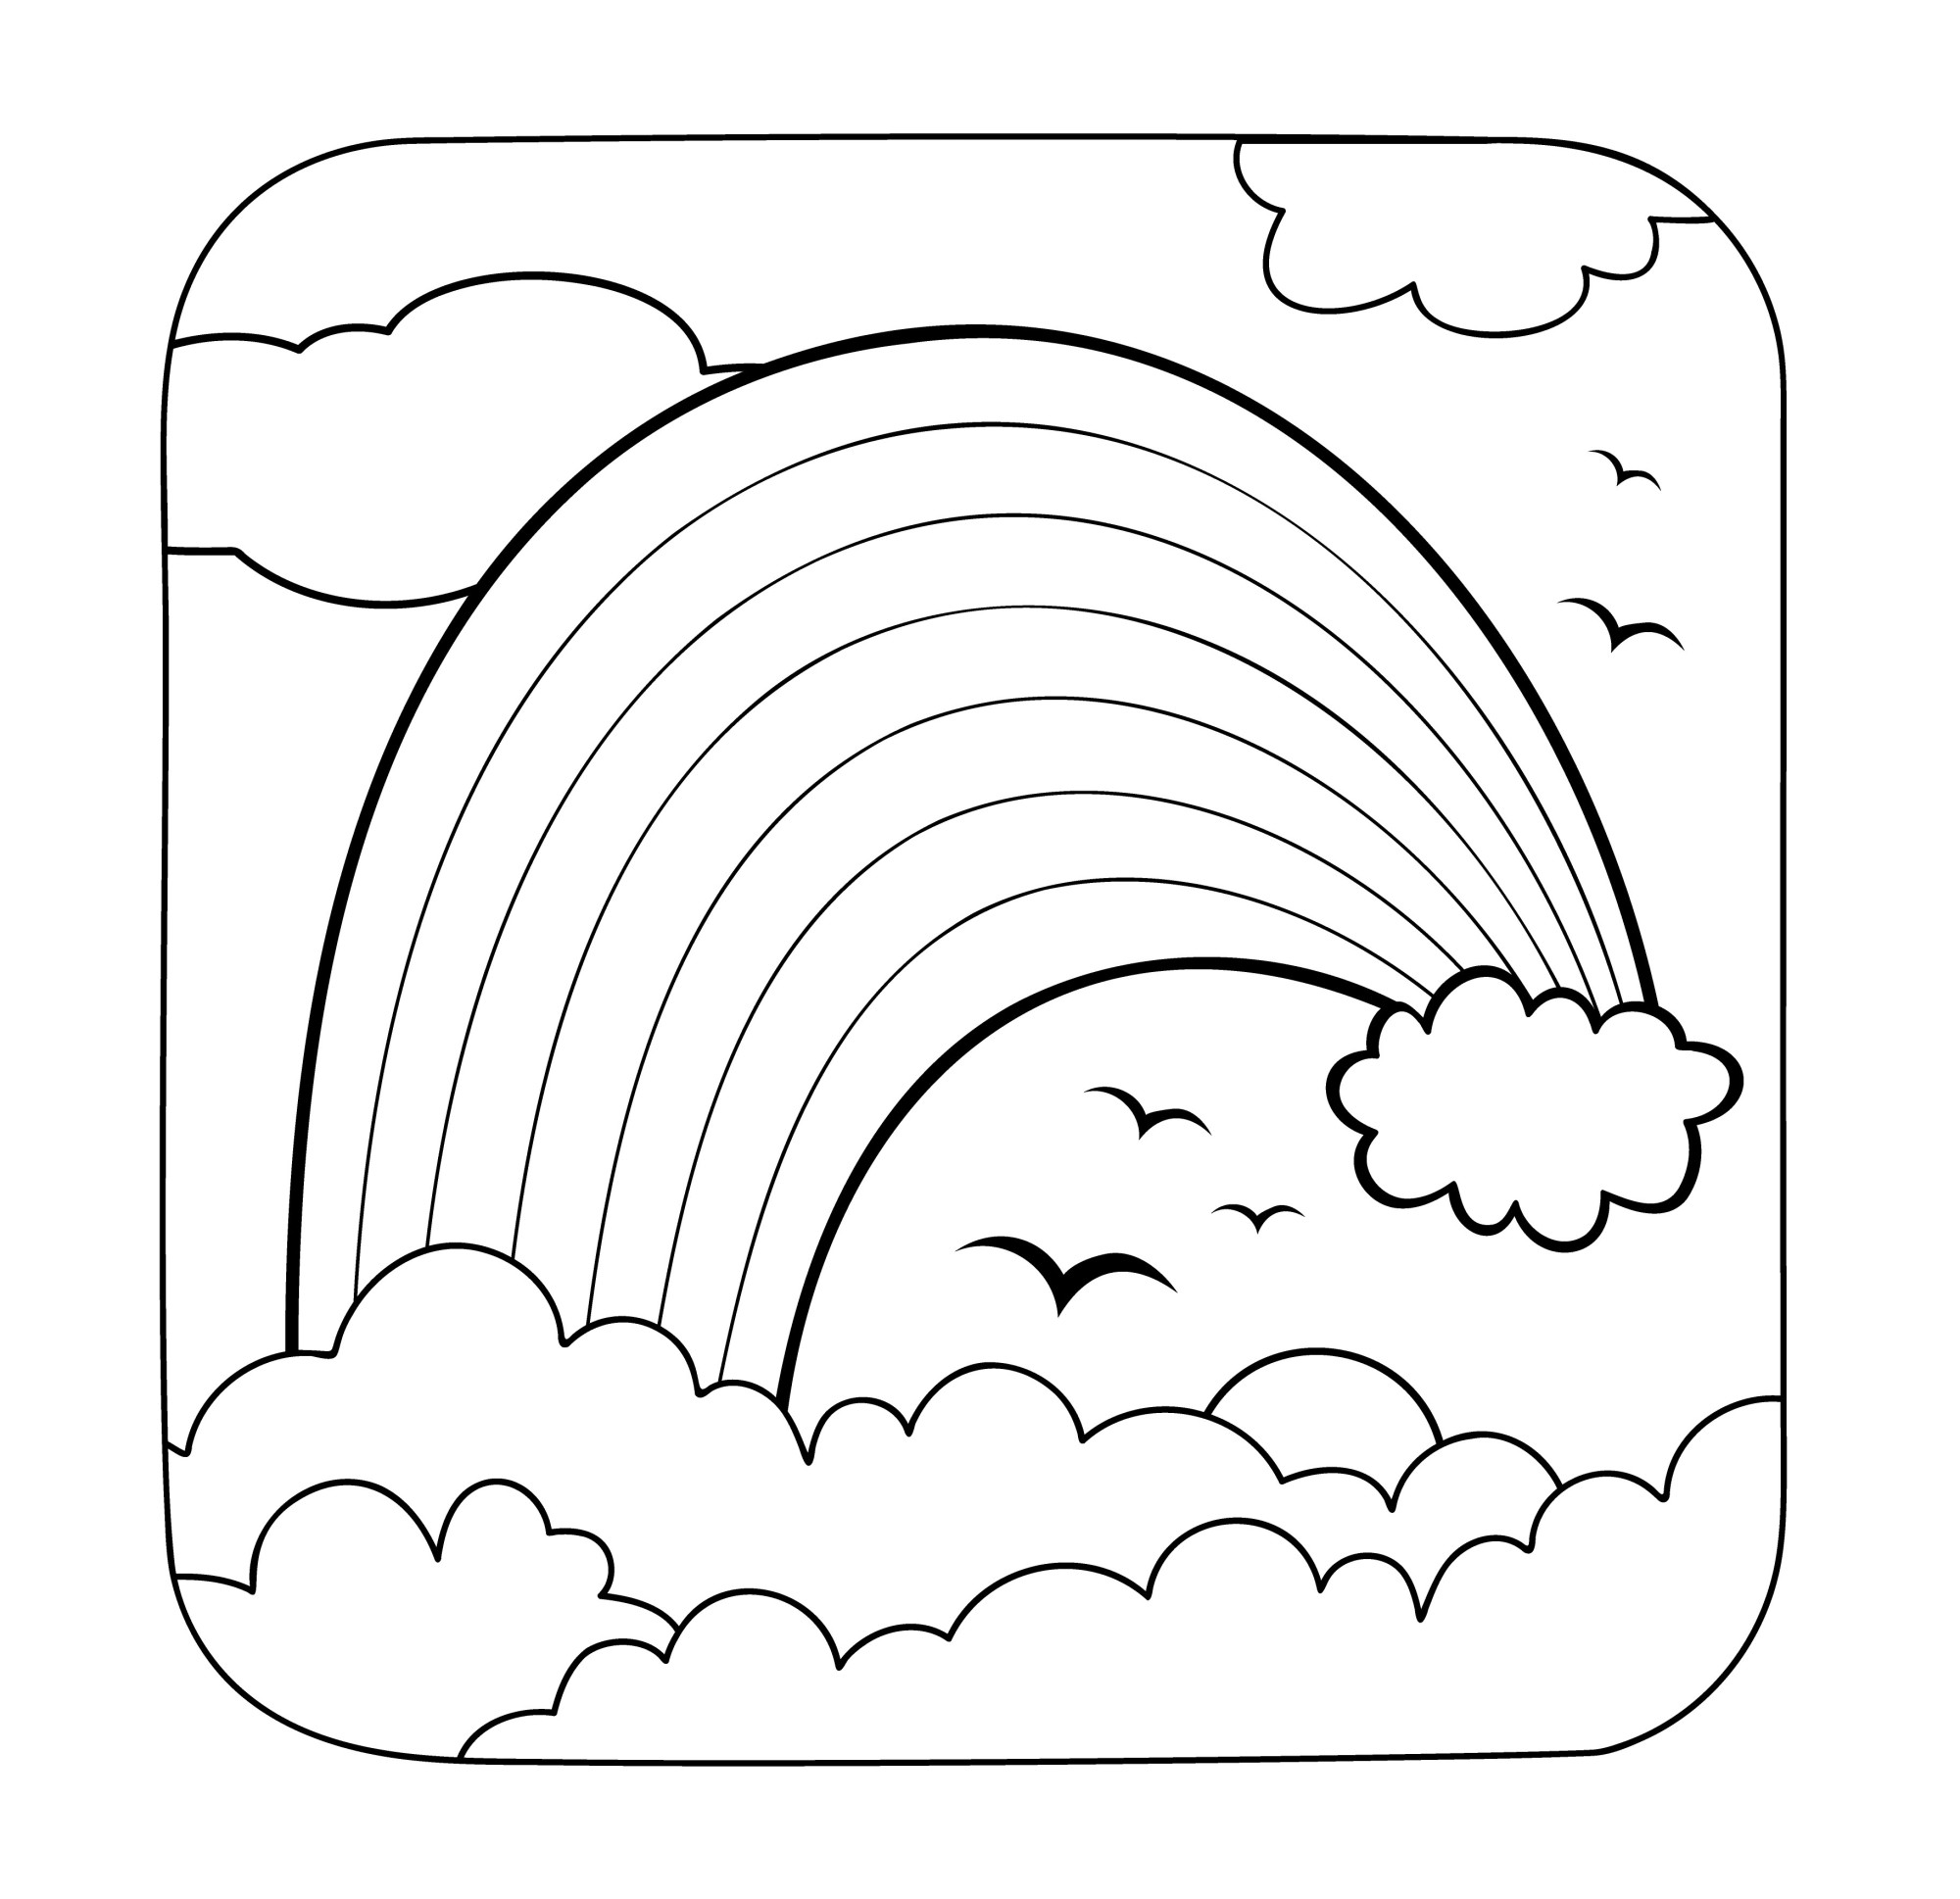 Раскраска для детей: радуга над облаками